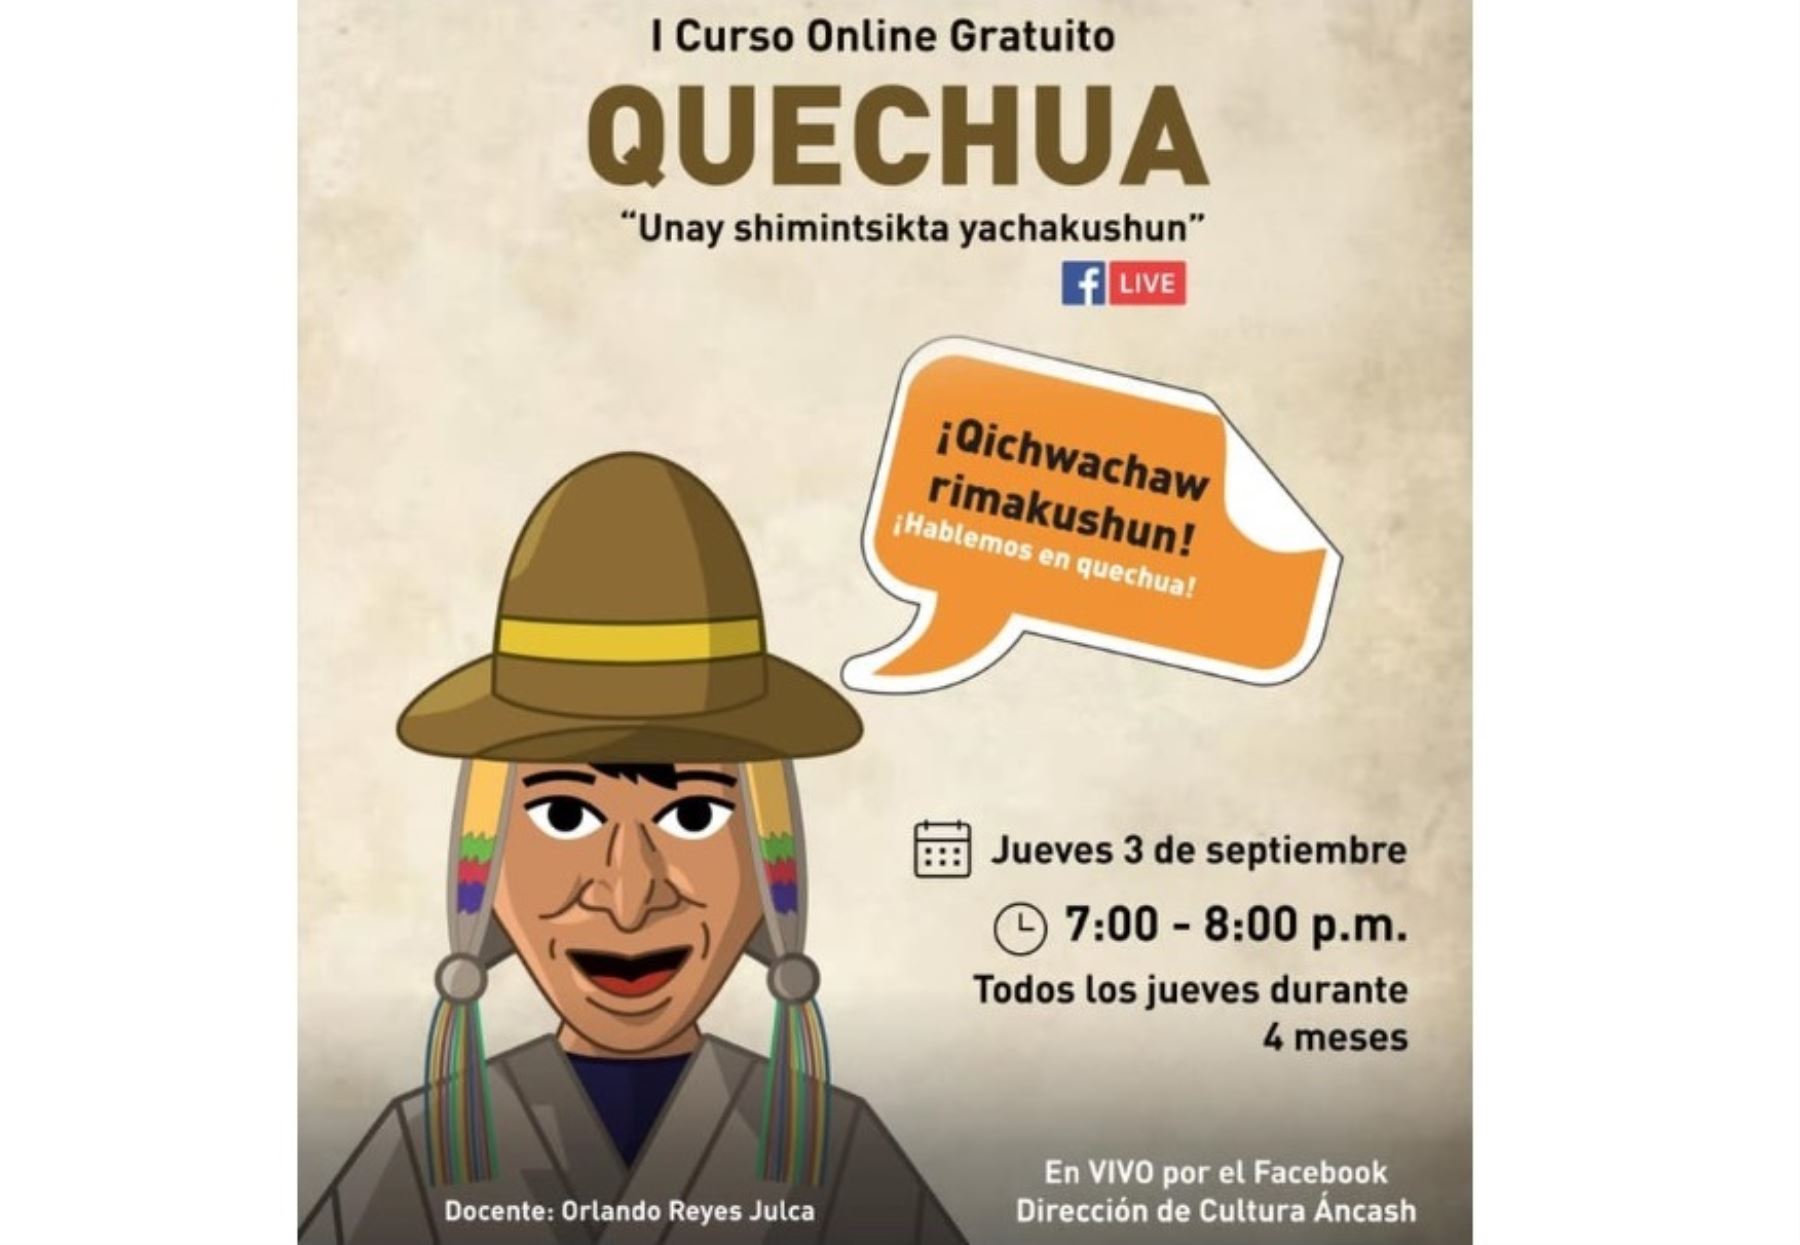 Una oportunidad para aprender el quechua, el ancestral idioma peruano, ofrece la Dirección de Cultura de Áncash que dictará un curso virtual gratuito a partir de mañana.